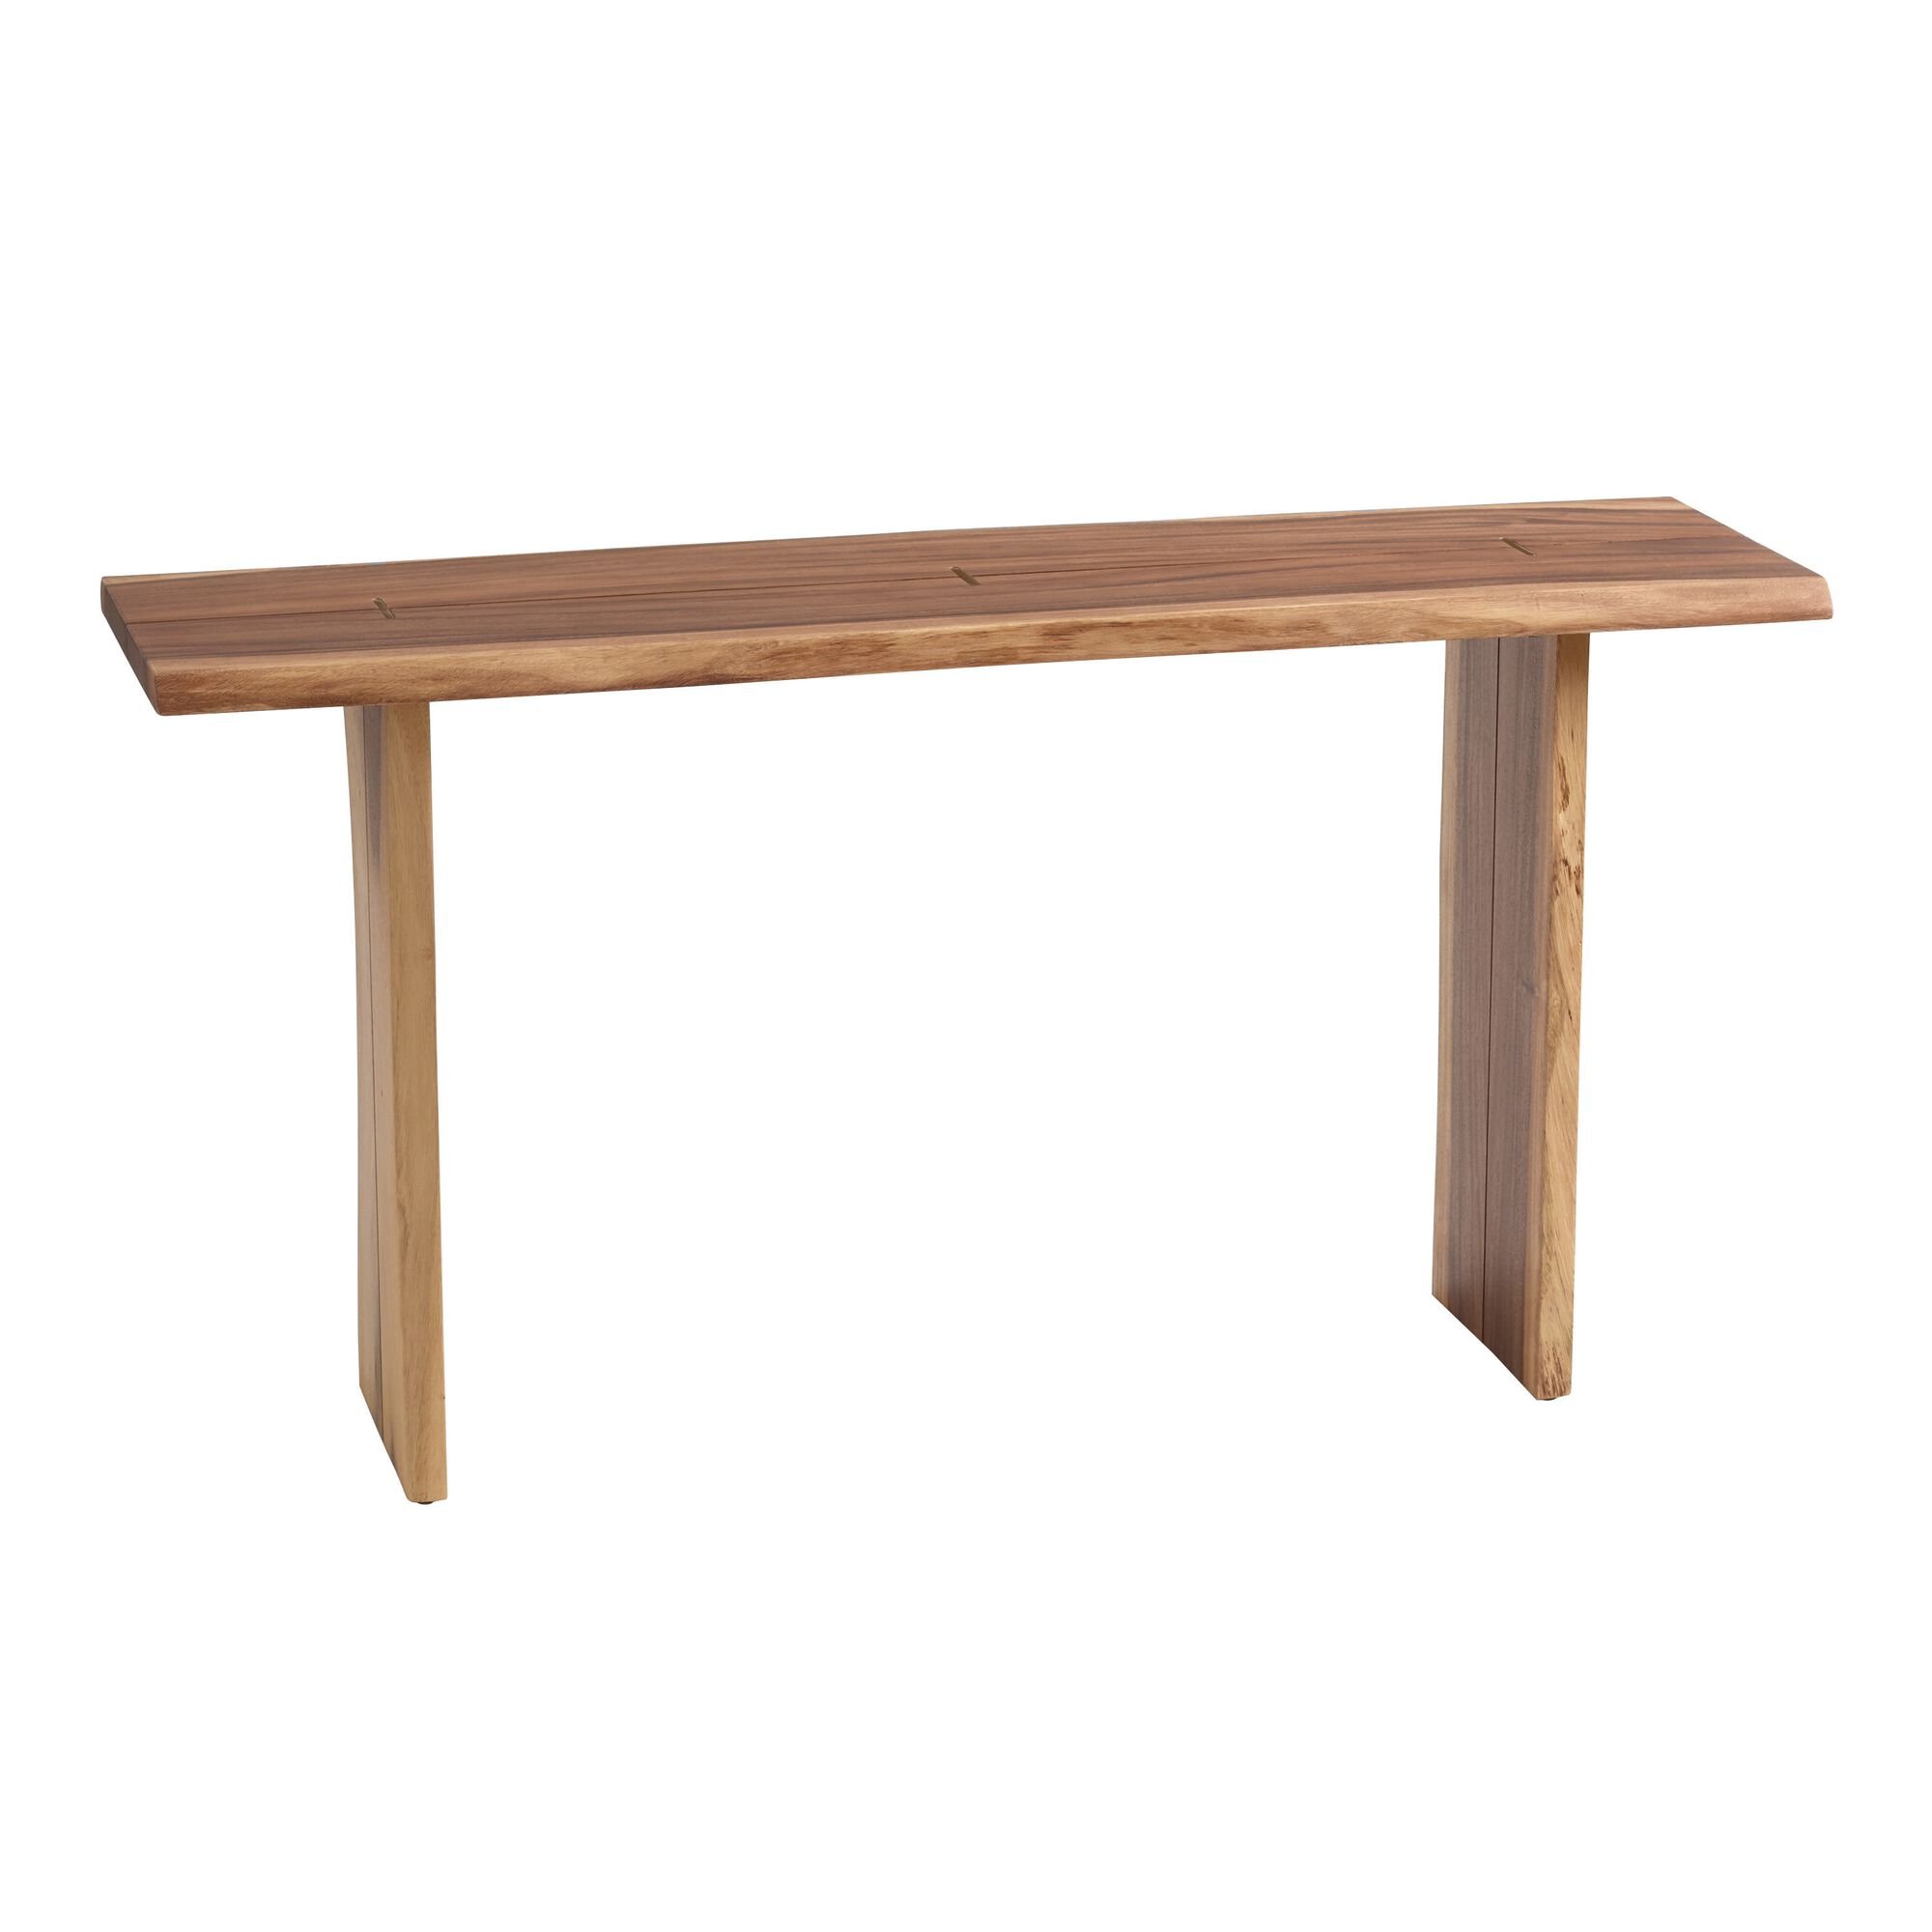 Sansur Rustic Pecan Live Edge Wood Console Table - $349.99 - World Market